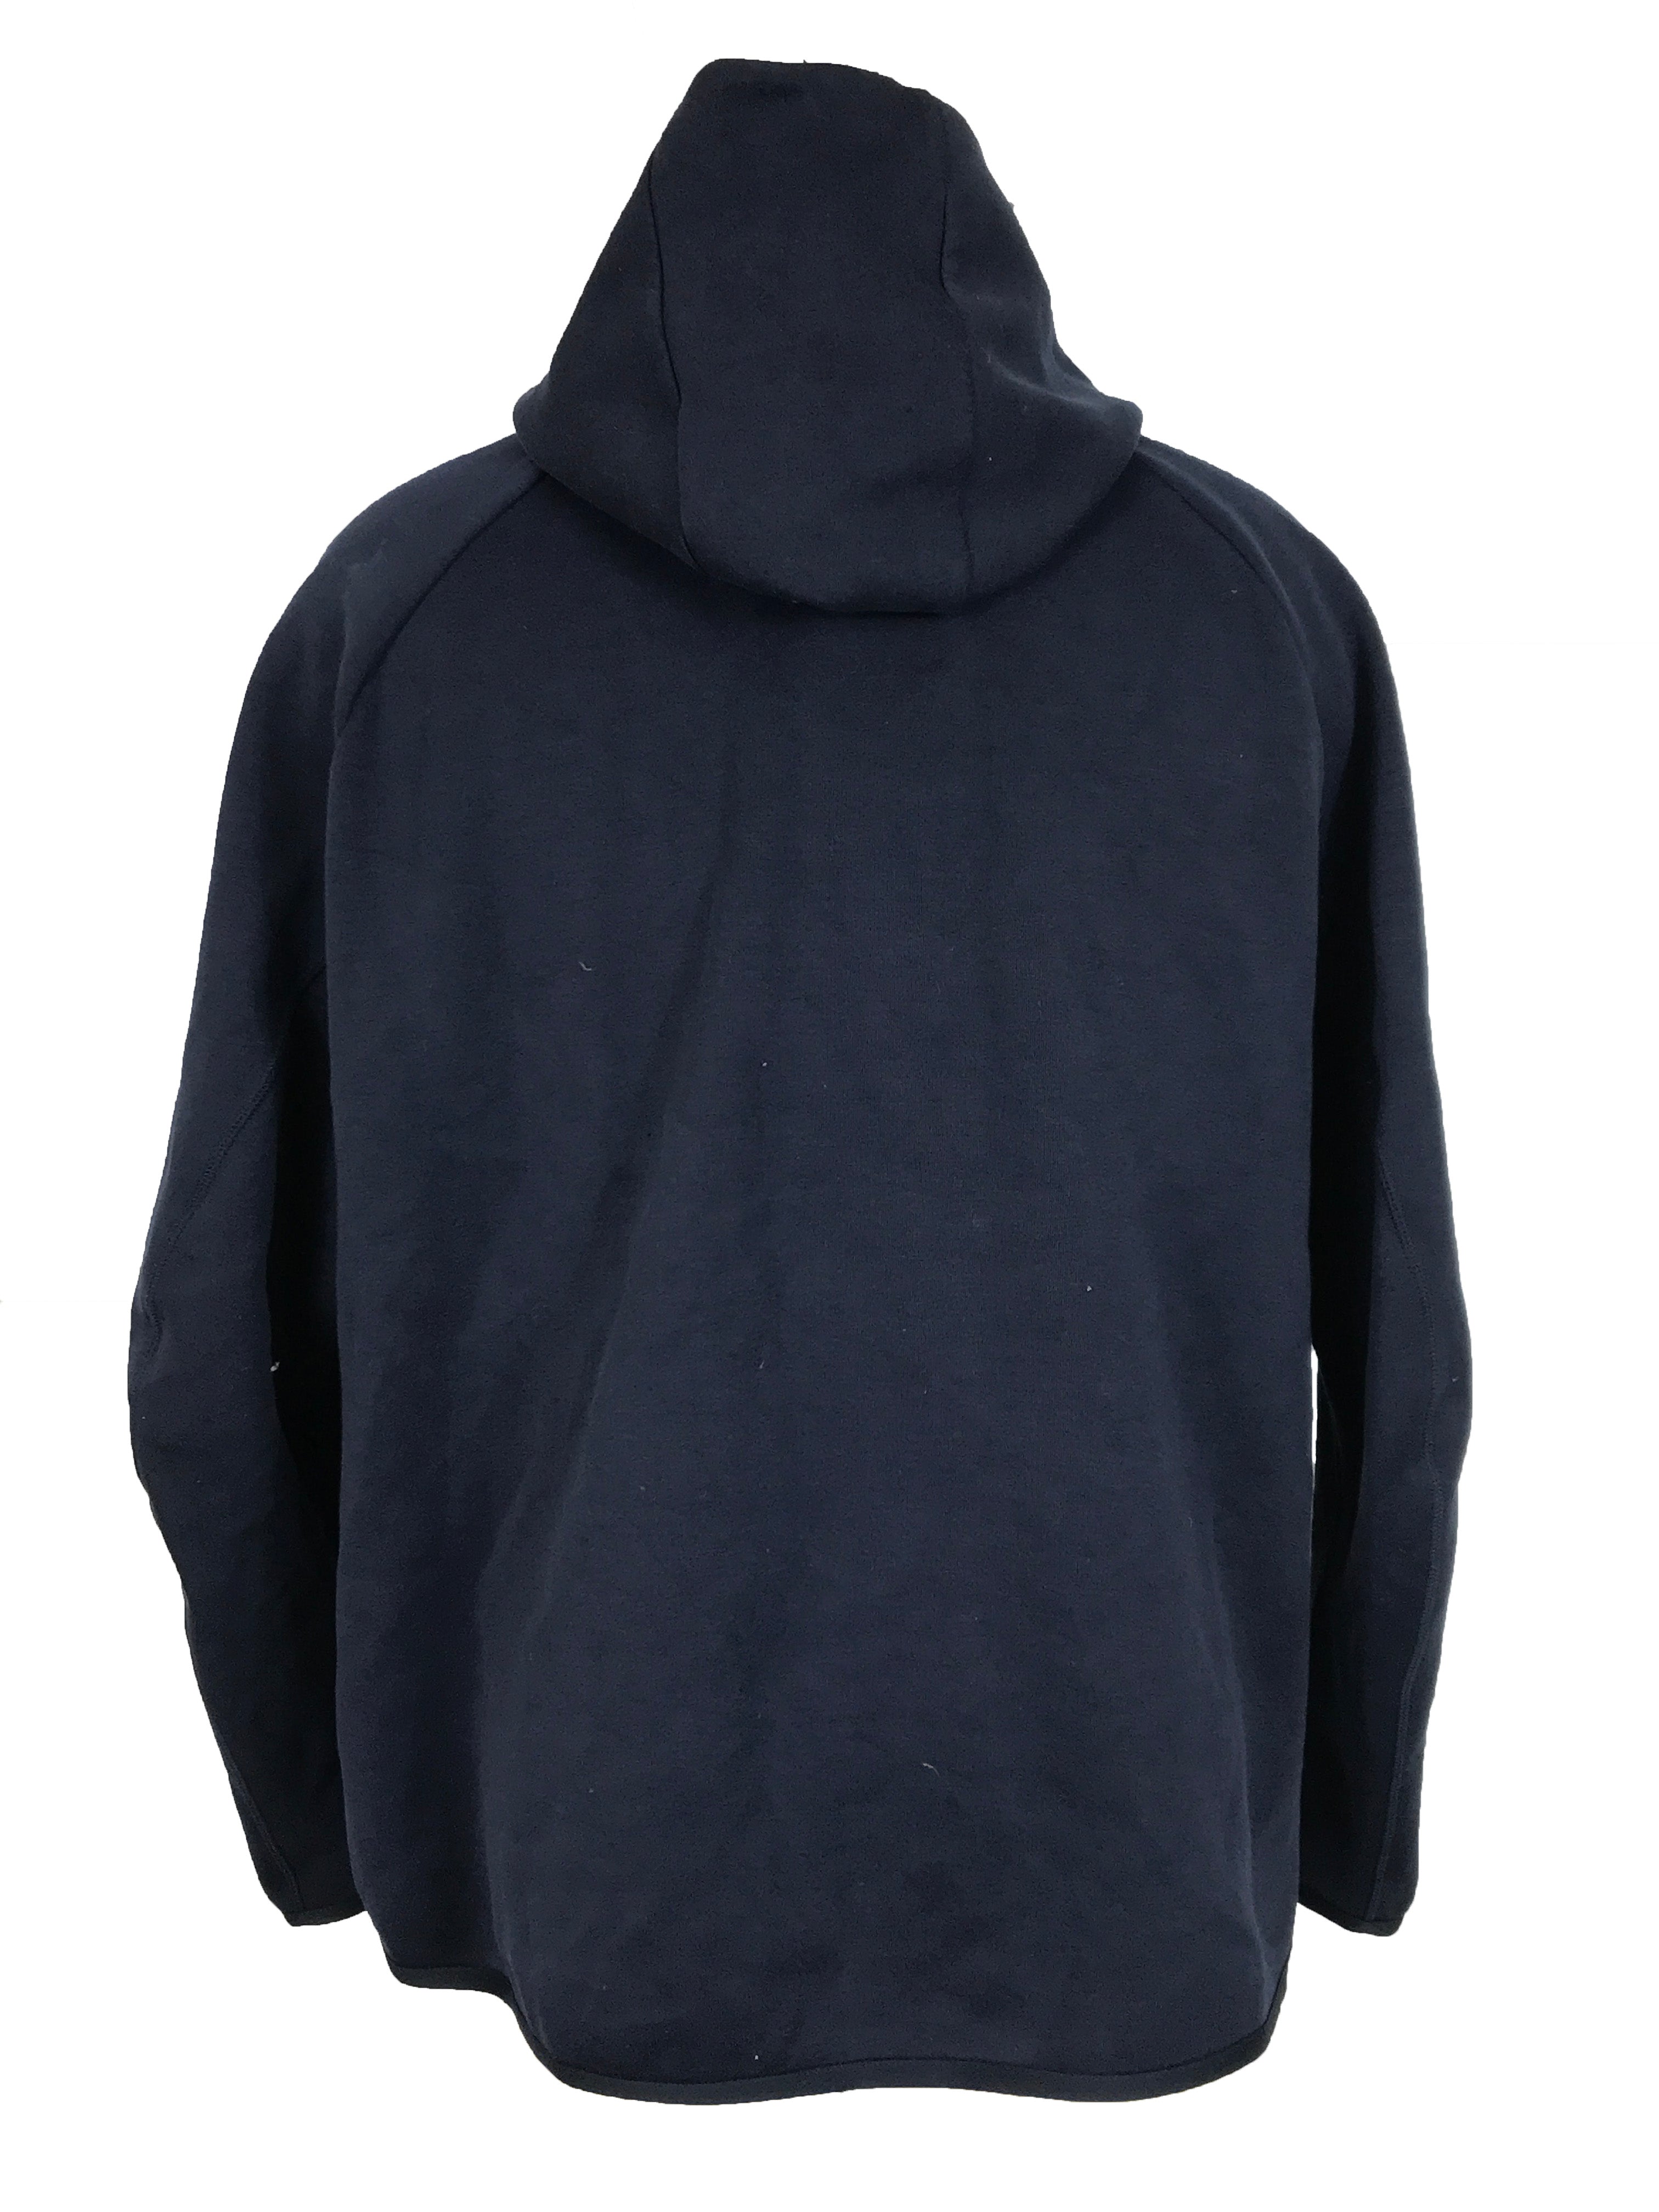 Nike Navy Blue Zip-Up Sweatshirt Men's Size XL